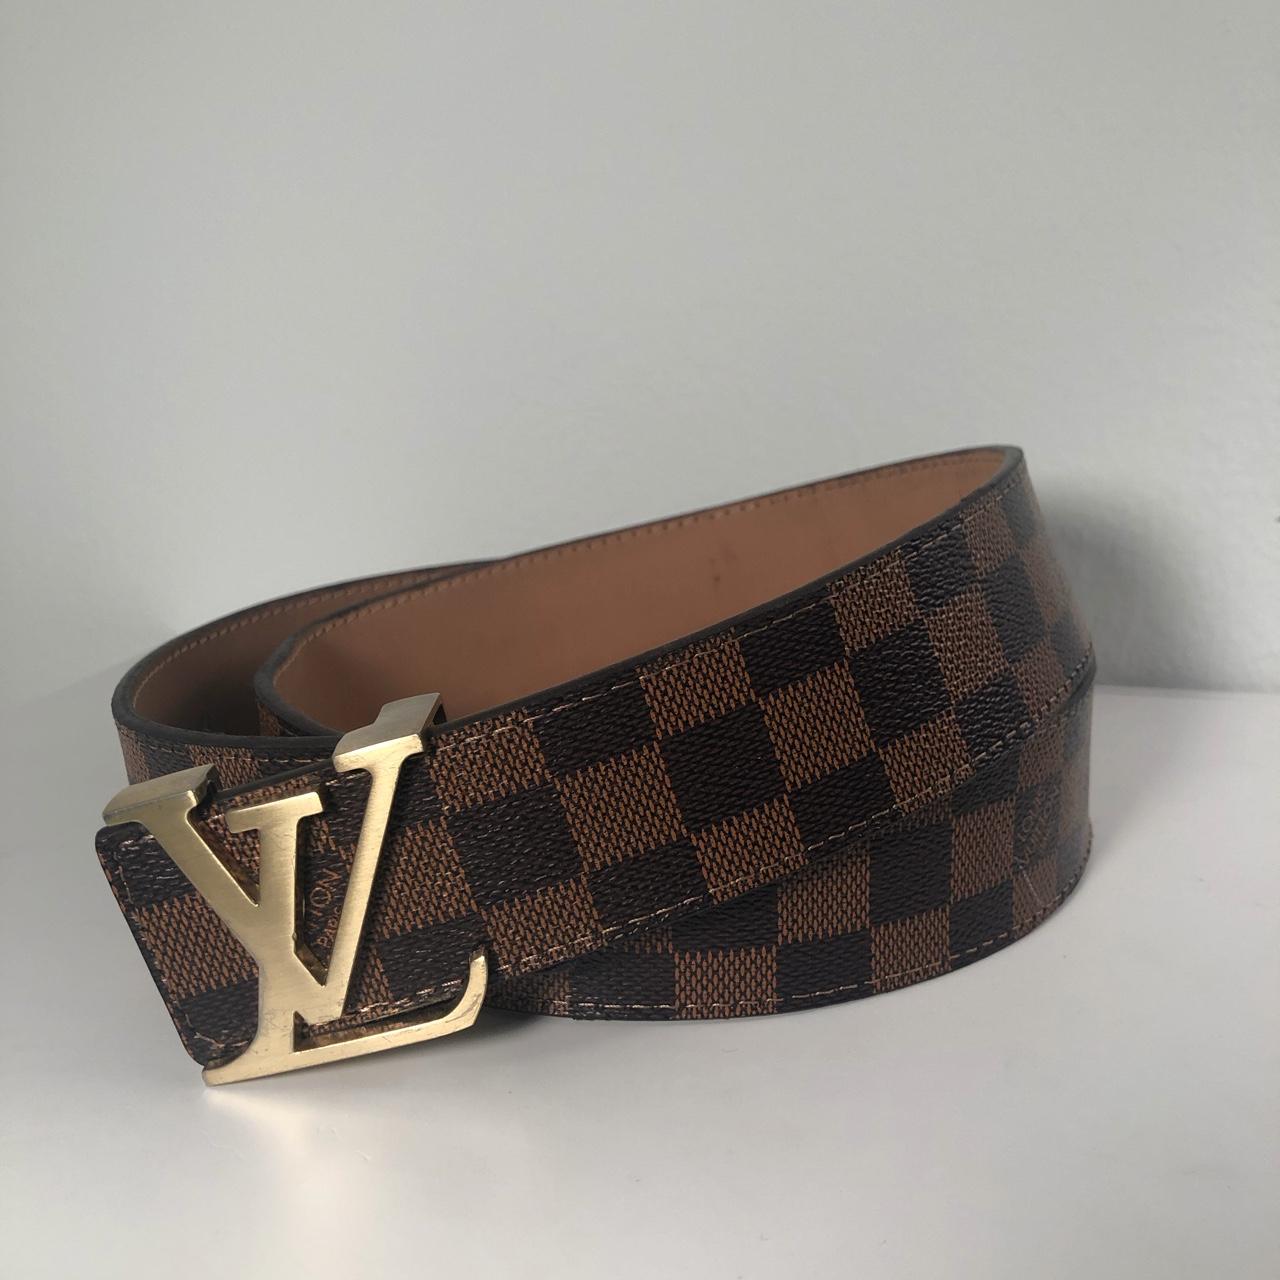 Louis Vuitton Belt #louisvuitton #belt